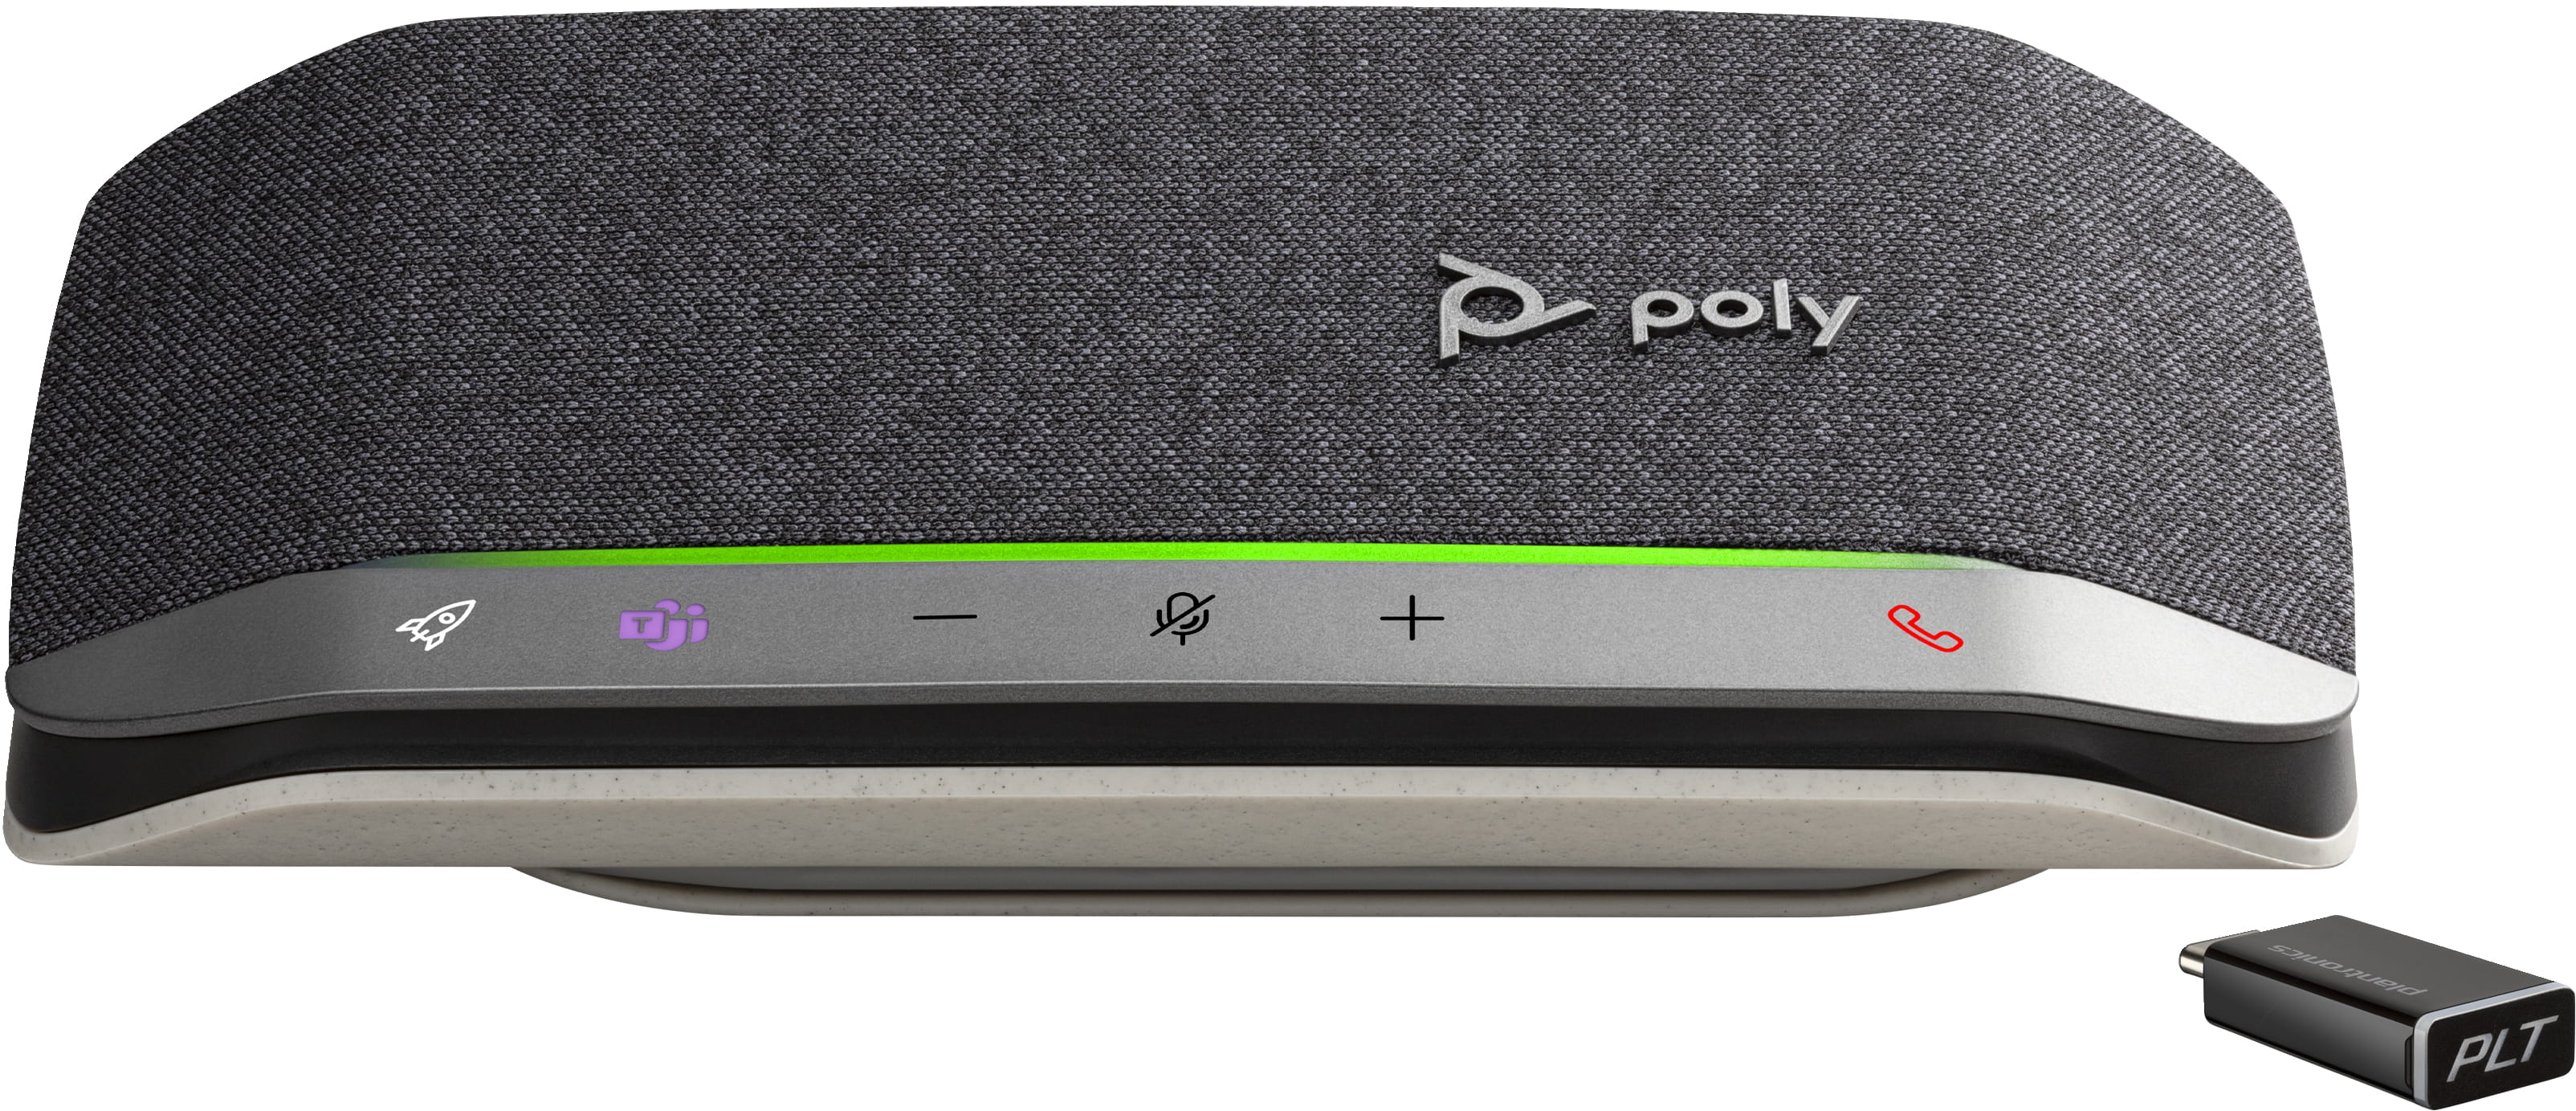 HP Poly Sync 20-M - Smarte Freisprecheinrichtung